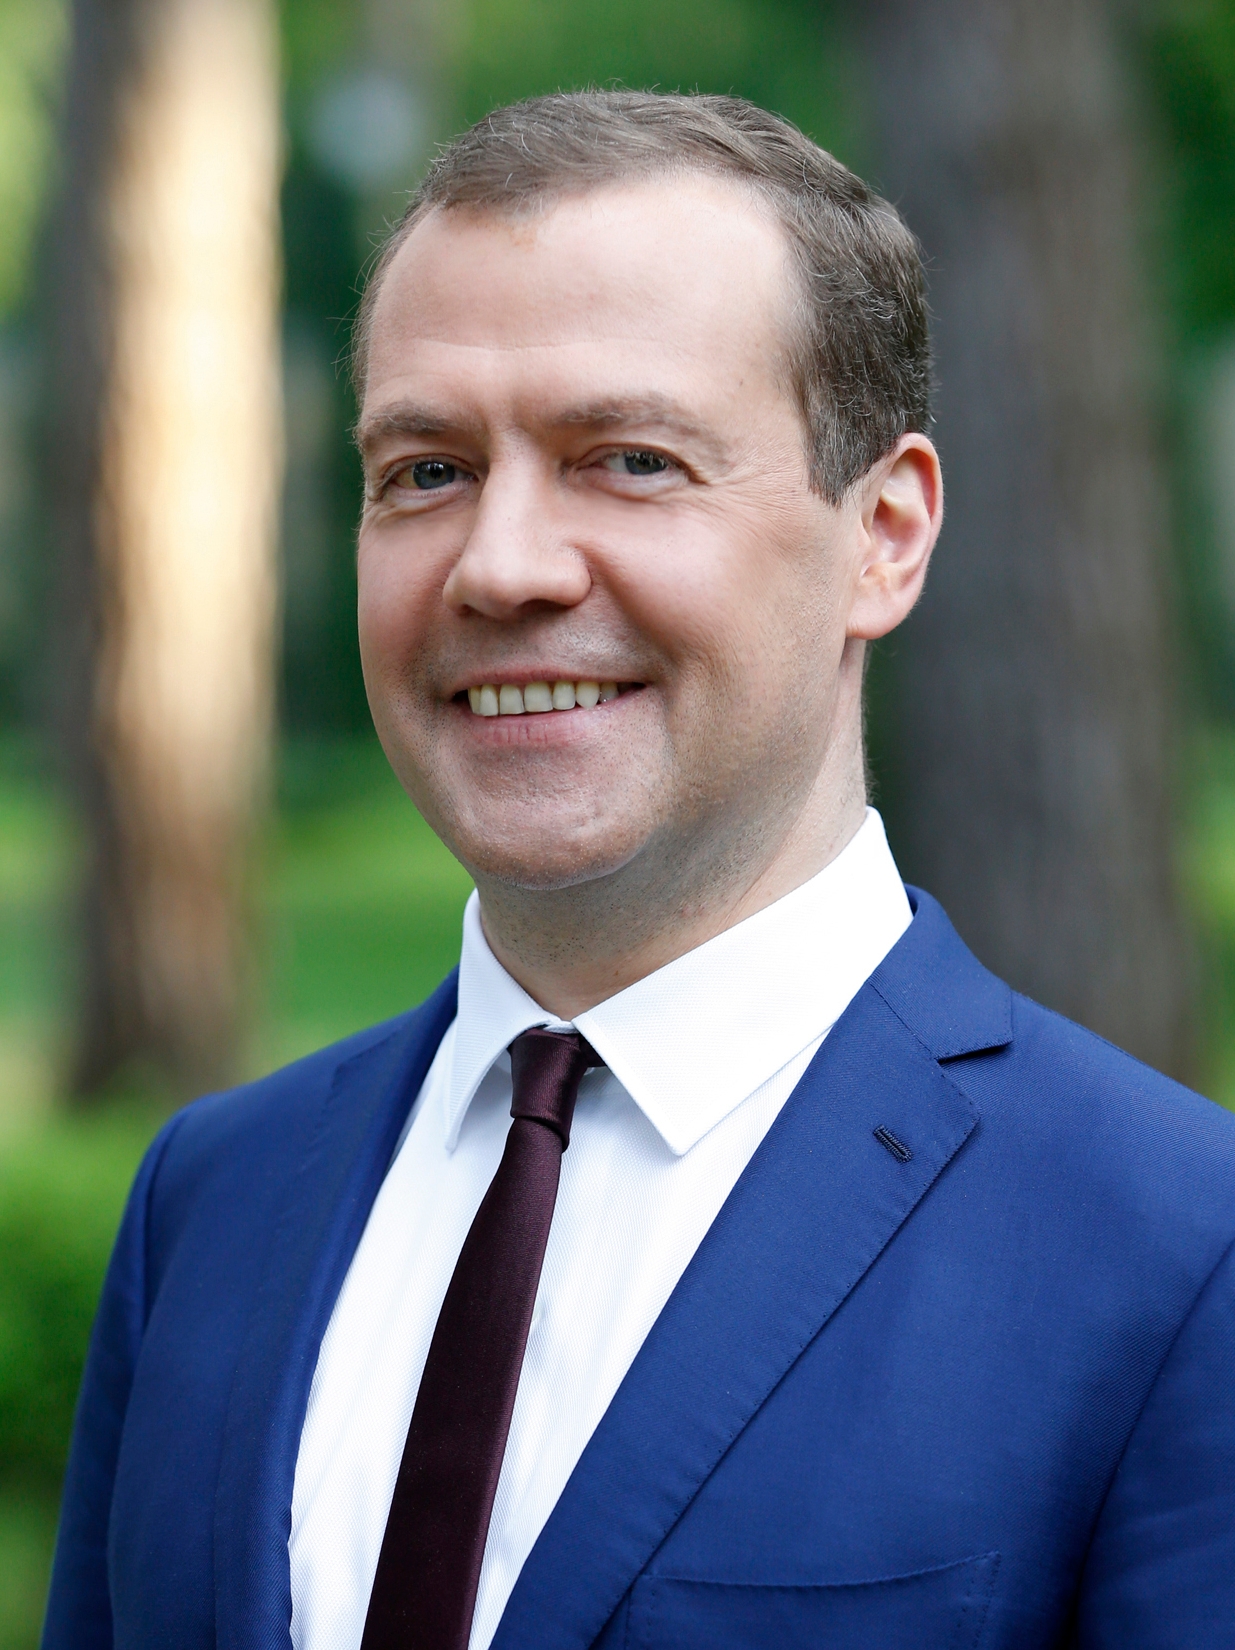 auteur Dmitry Medvedev de la citation Ce qui se passe avec le climat de la planète en ce moment doit être un réveil pour nous tous, ce qui signifie tous les chefs d'État, tous les chefs d'organisations sociales, afin d'adopter une approche plus énergique pour contrer les changements mondiaux au climat.